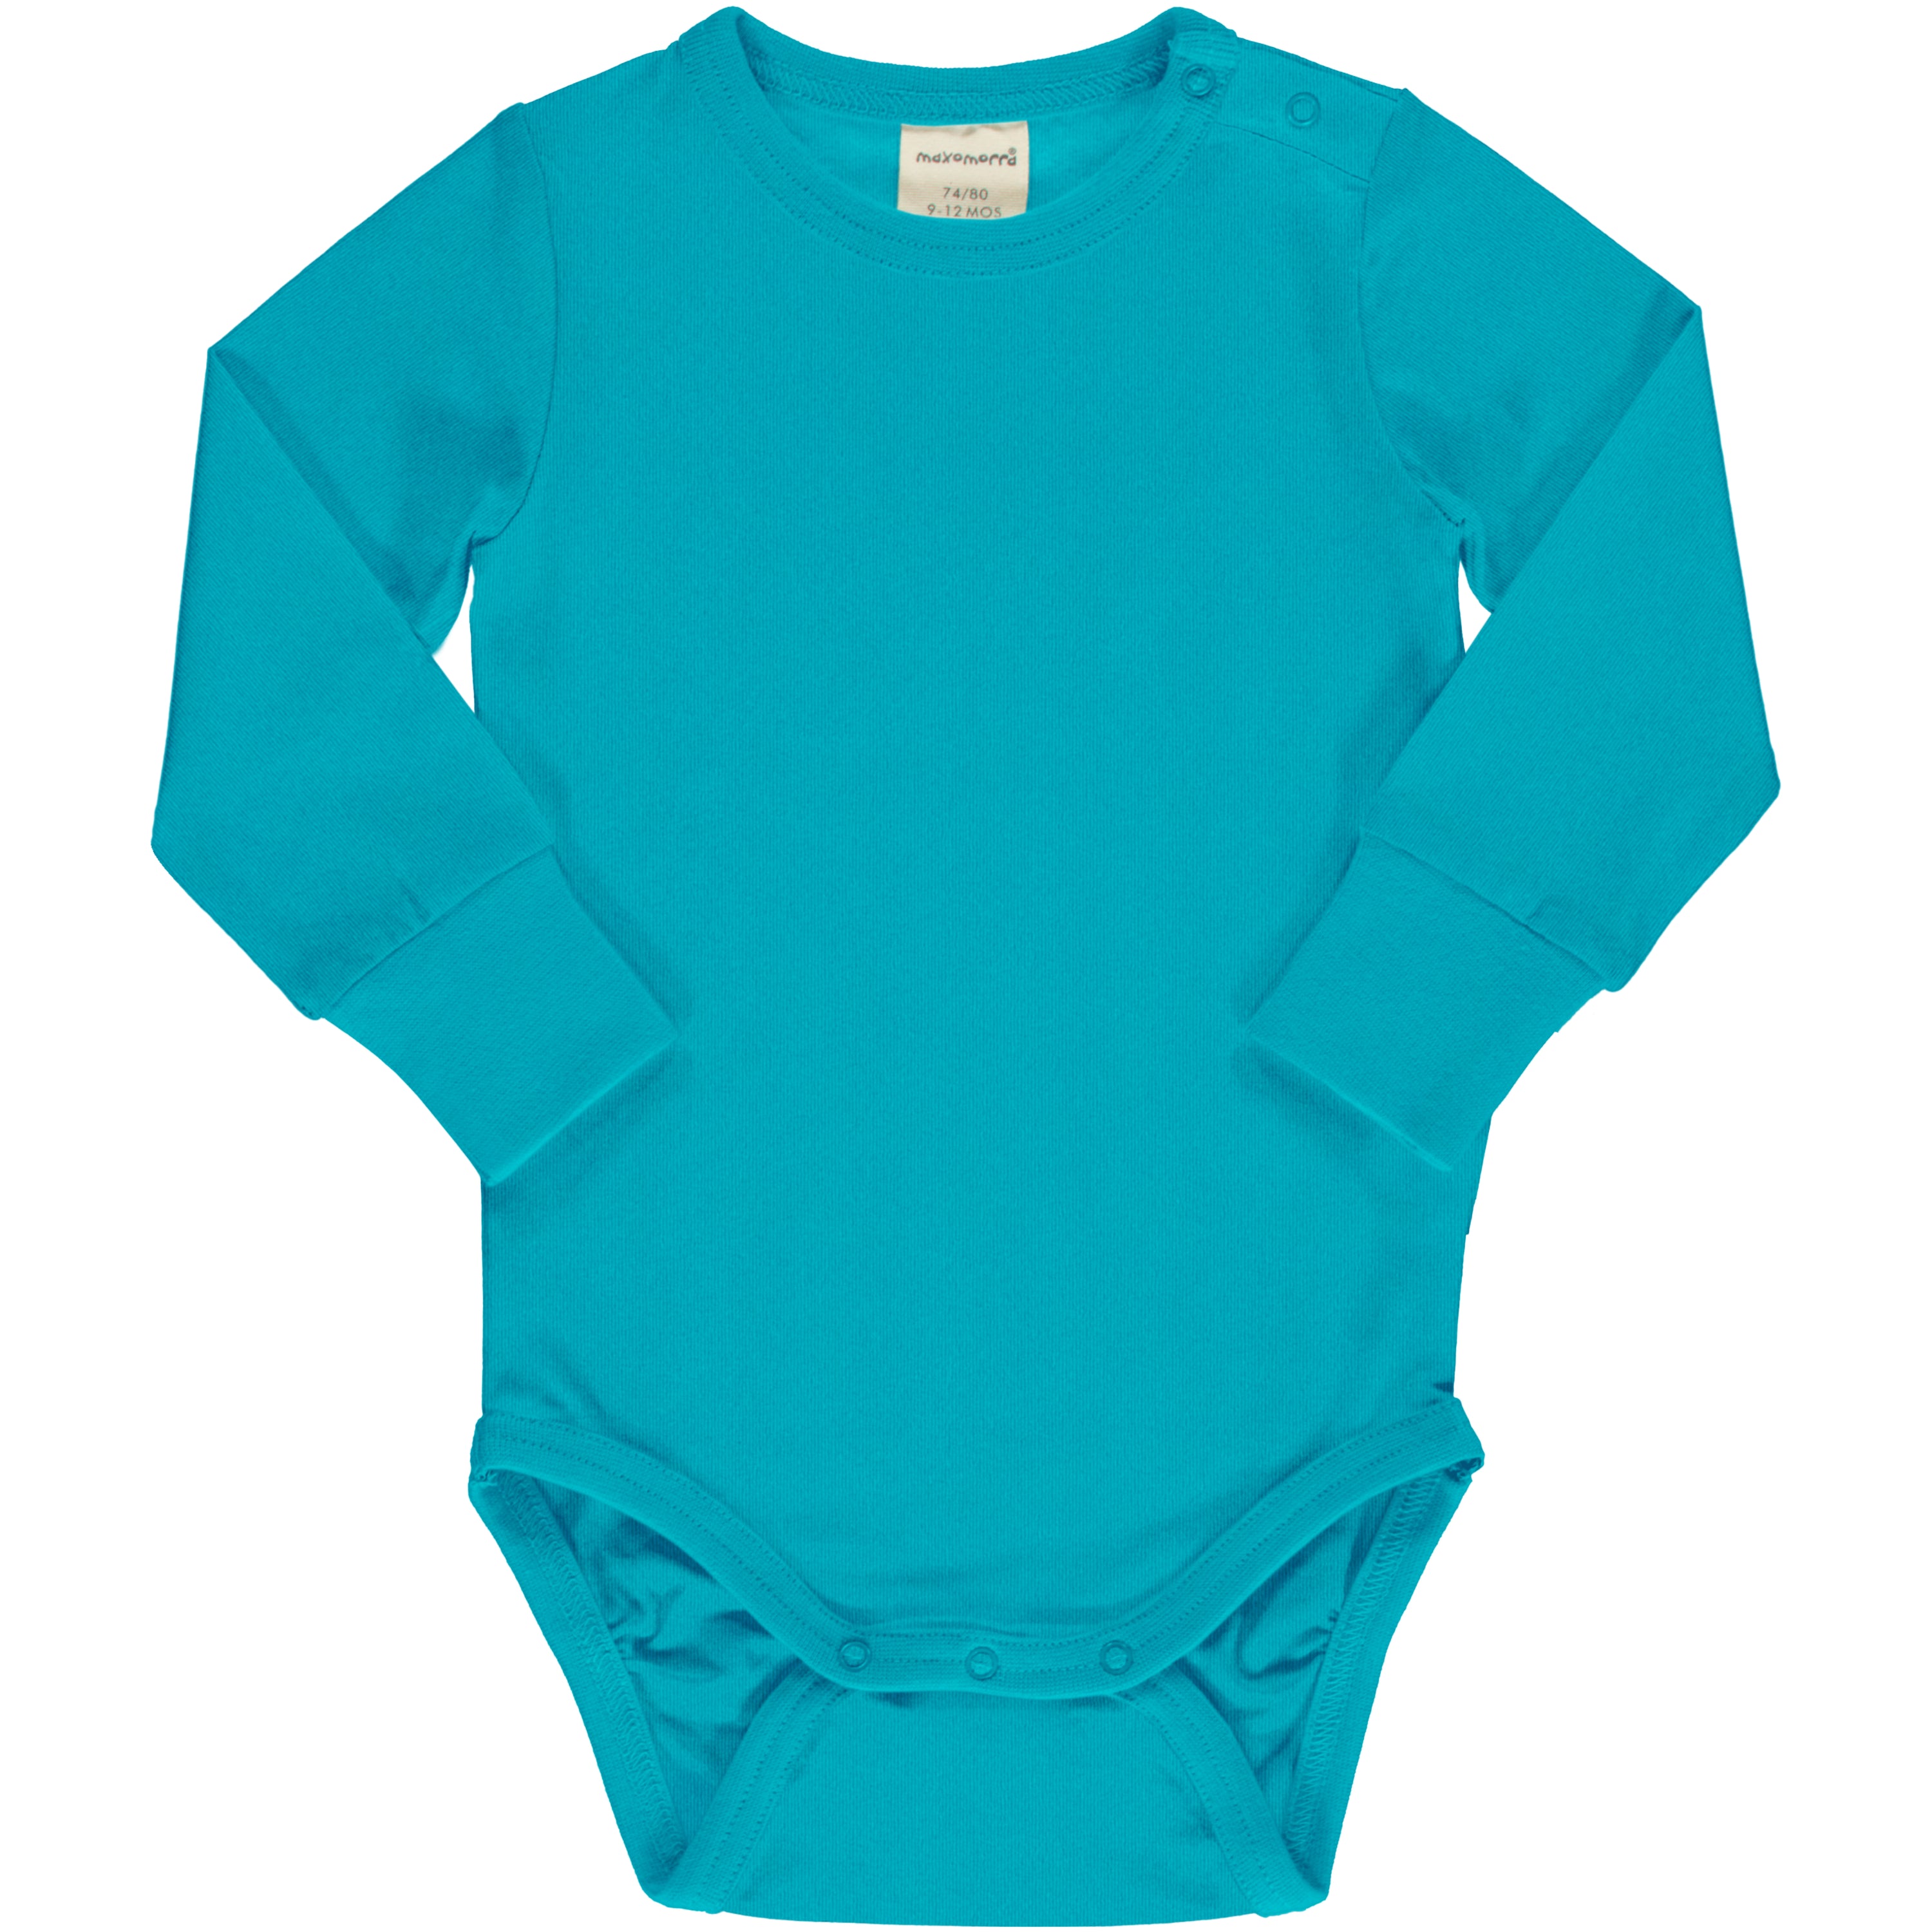 Children's Turquoise Bodysuit - Maxomorra